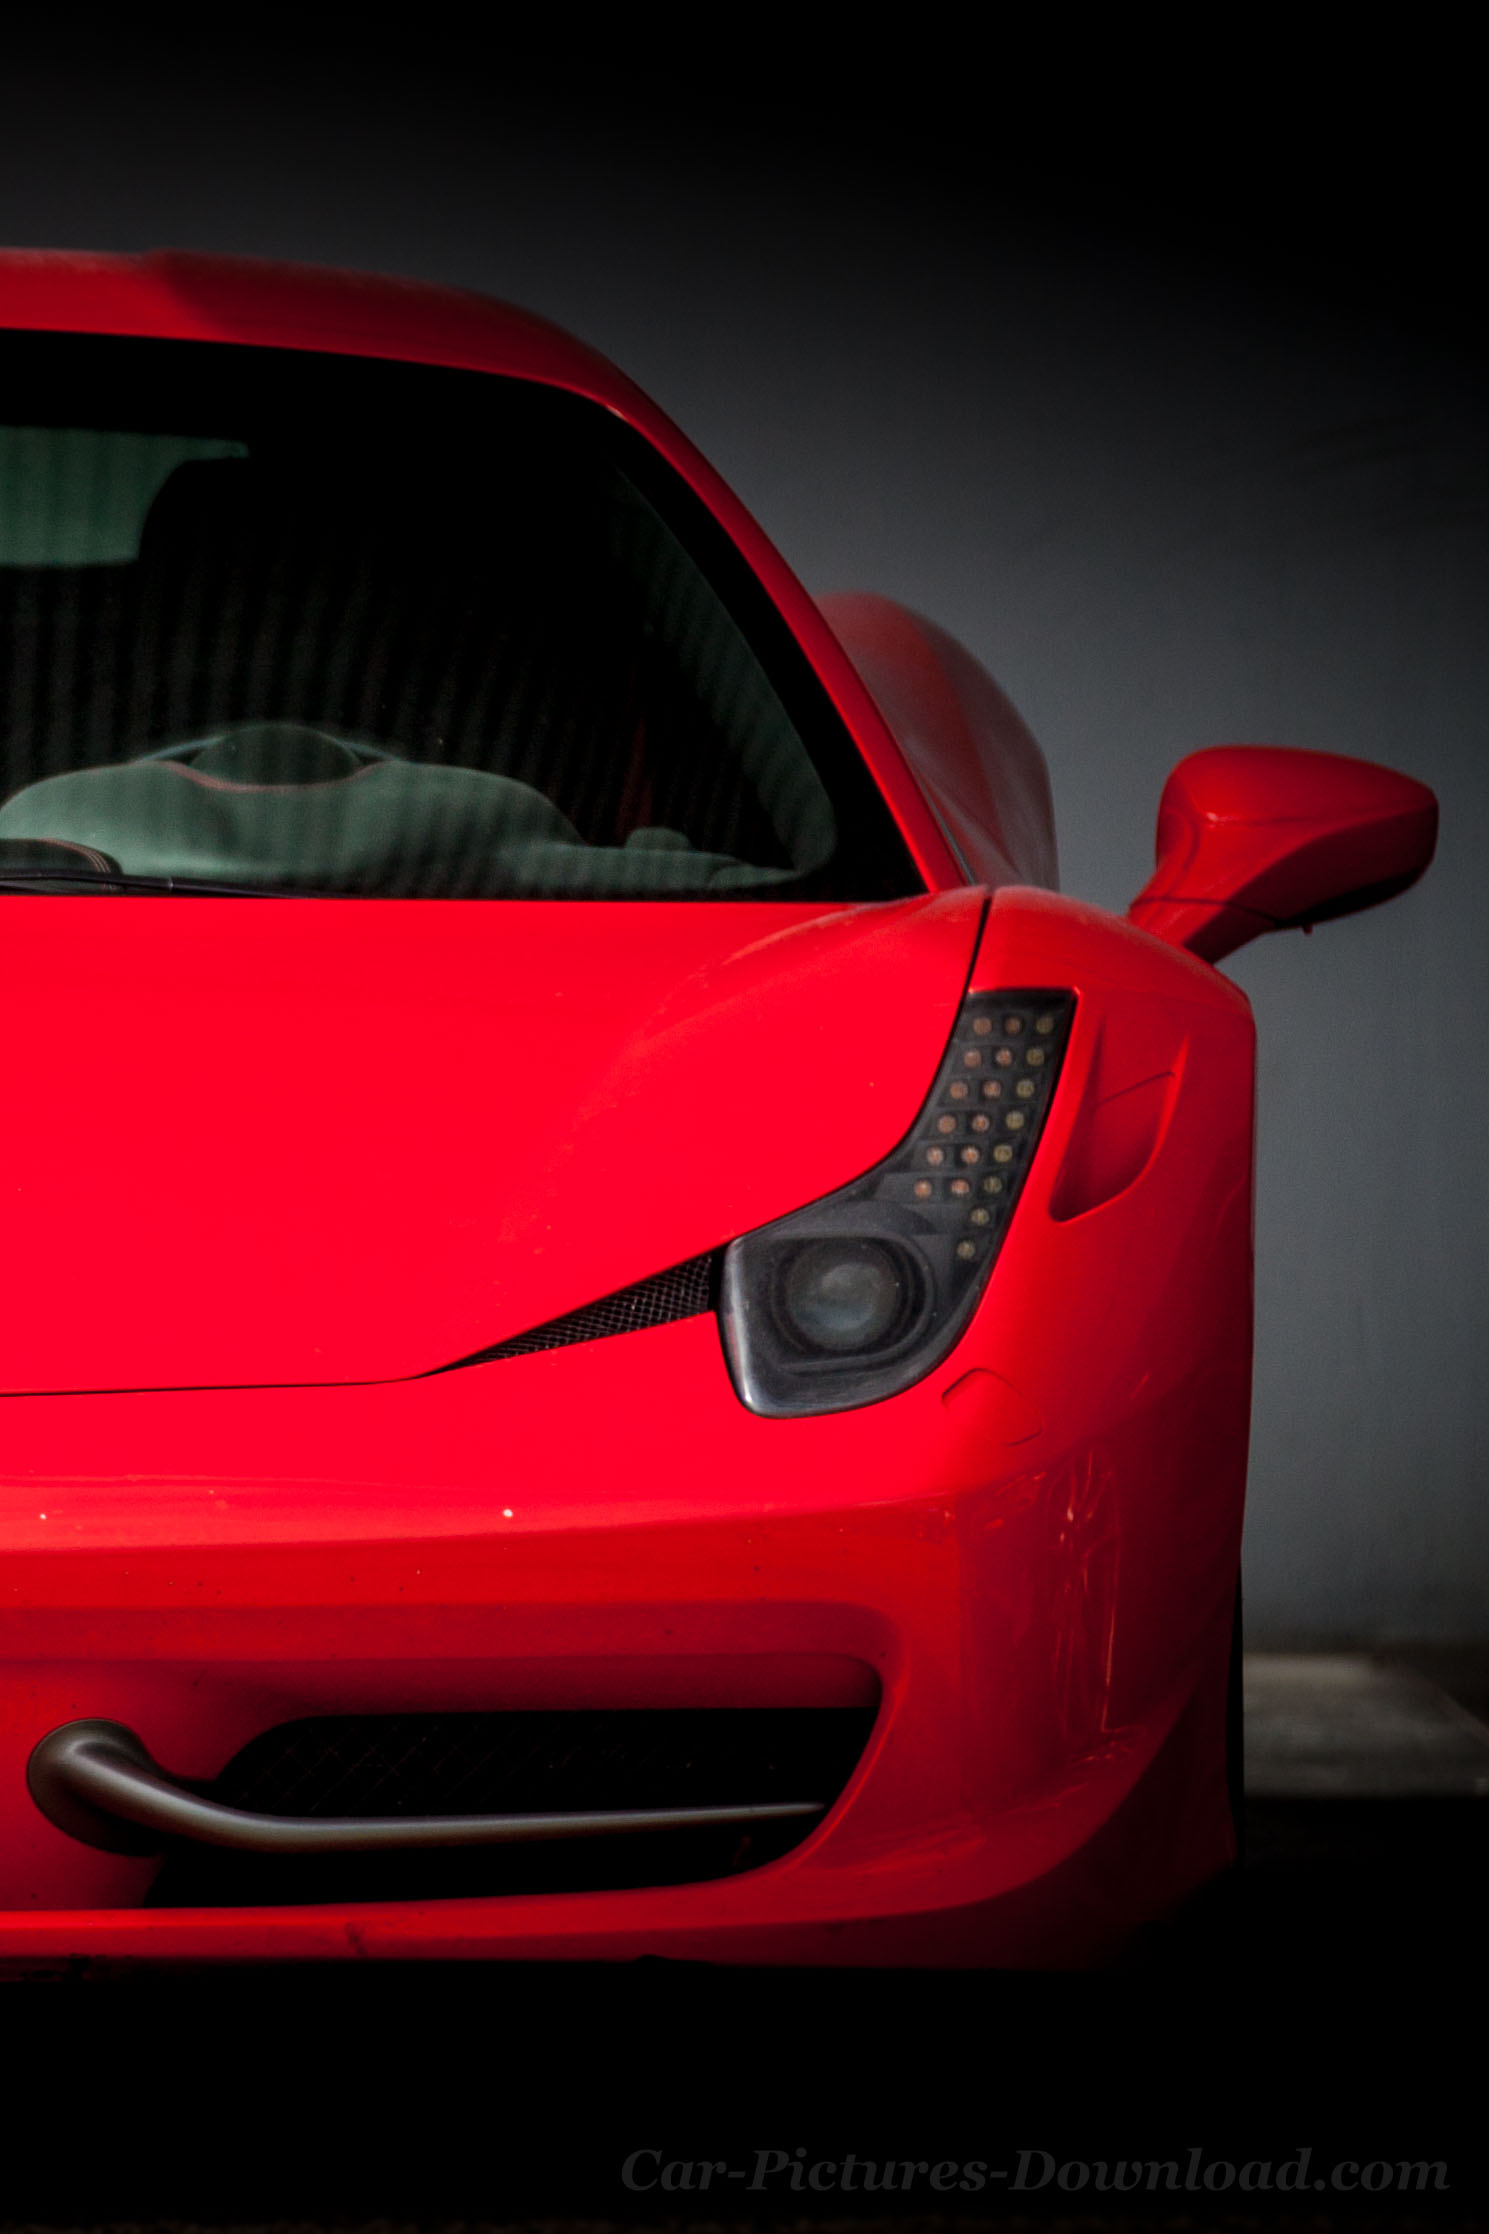 Download Red Ferrari Sports Car iPhone X Wallpaper  Wallpaperscom